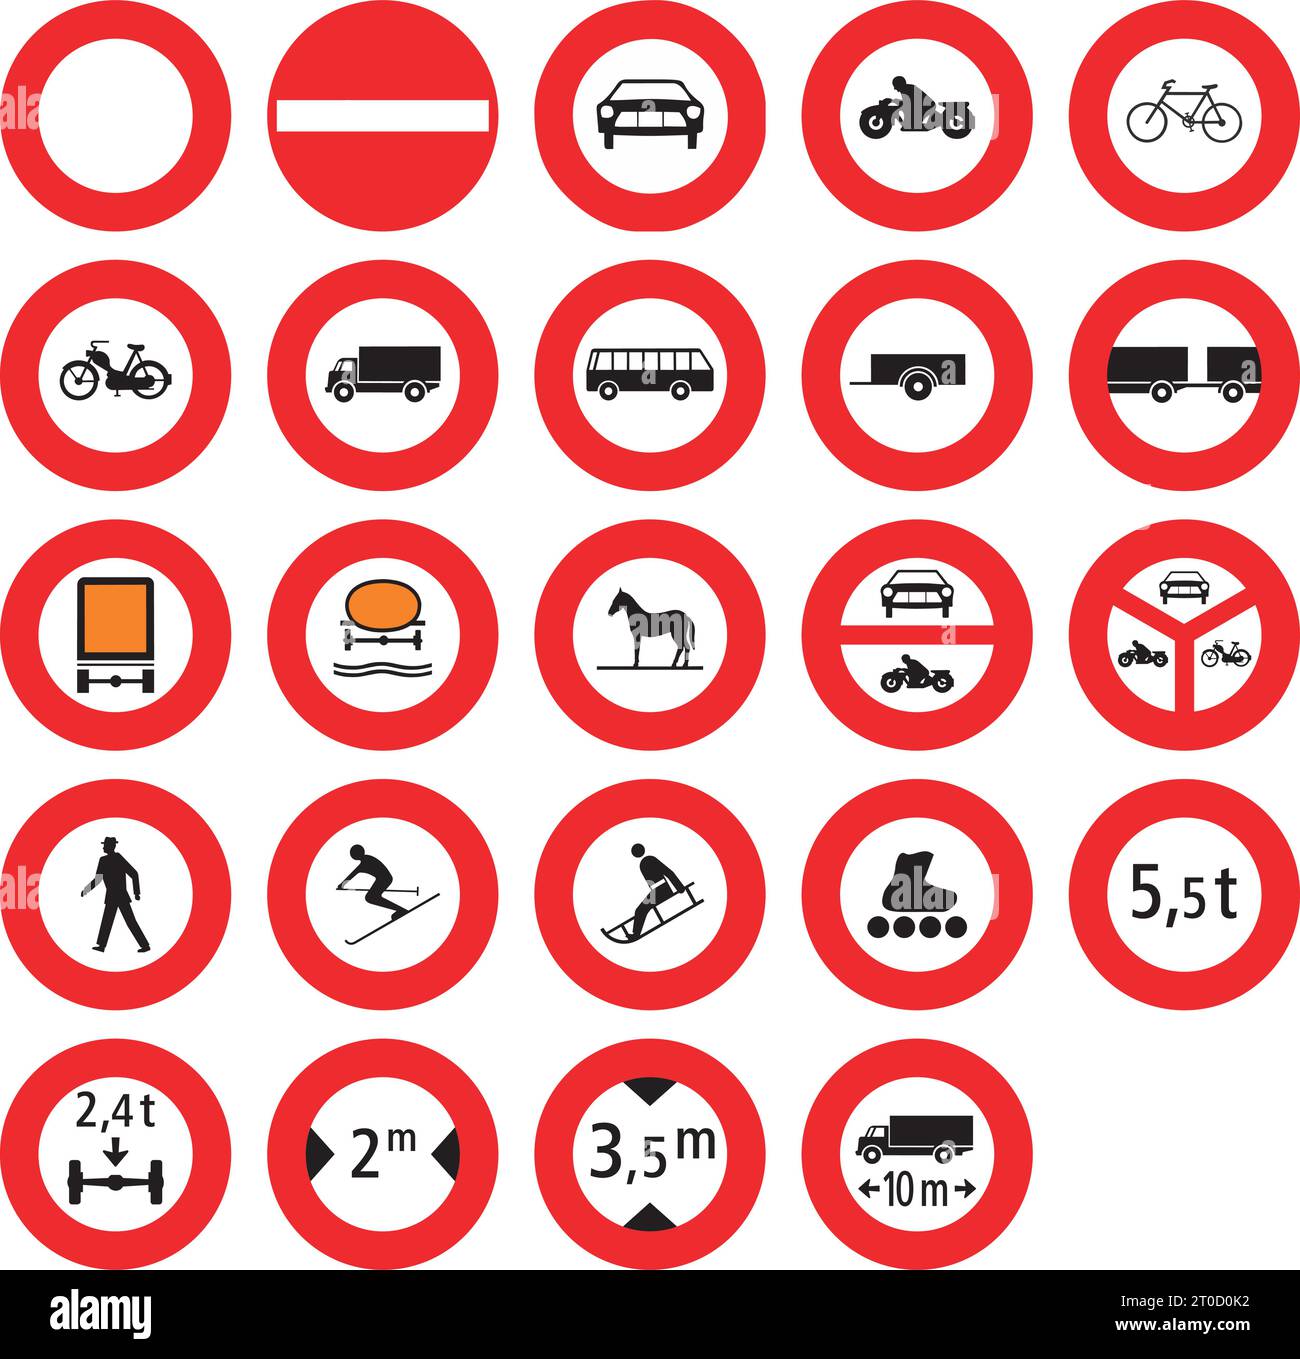 Interdictions, signalisation réglementaire, signalisation routière en Suisse et au Liechtenstein Illustration de Vecteur